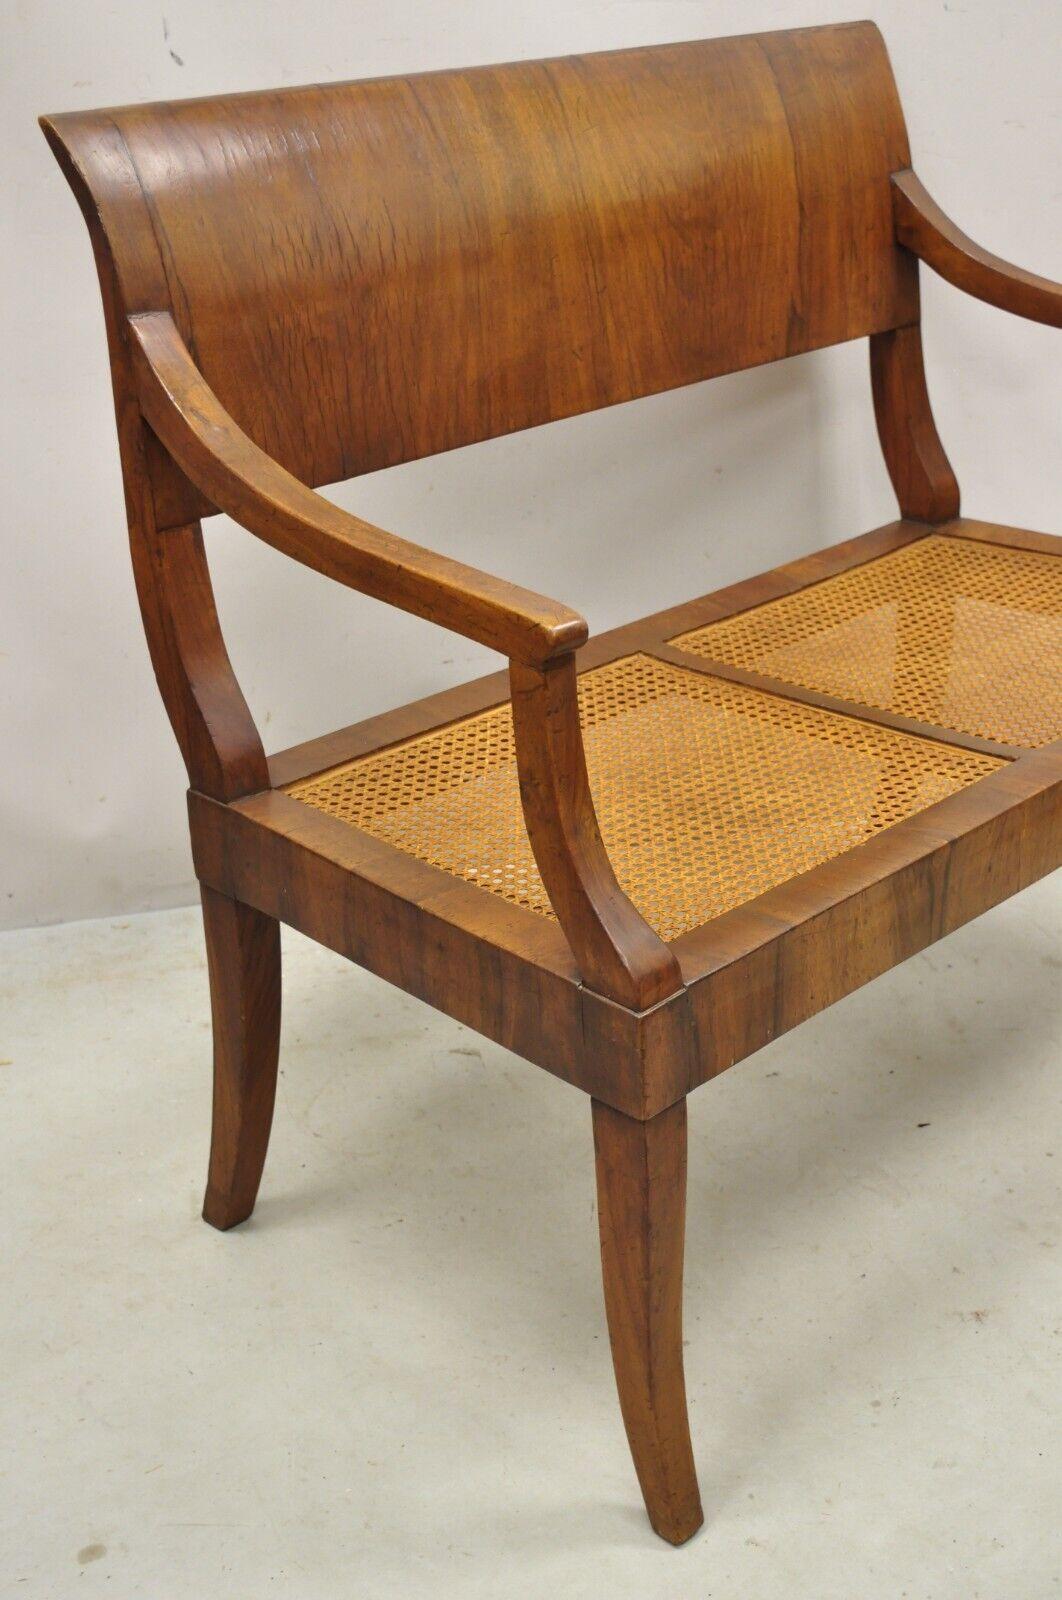 Antique Italian Biedermeier Style Elm Wood Cane Seat Walnut Bench Settee 1